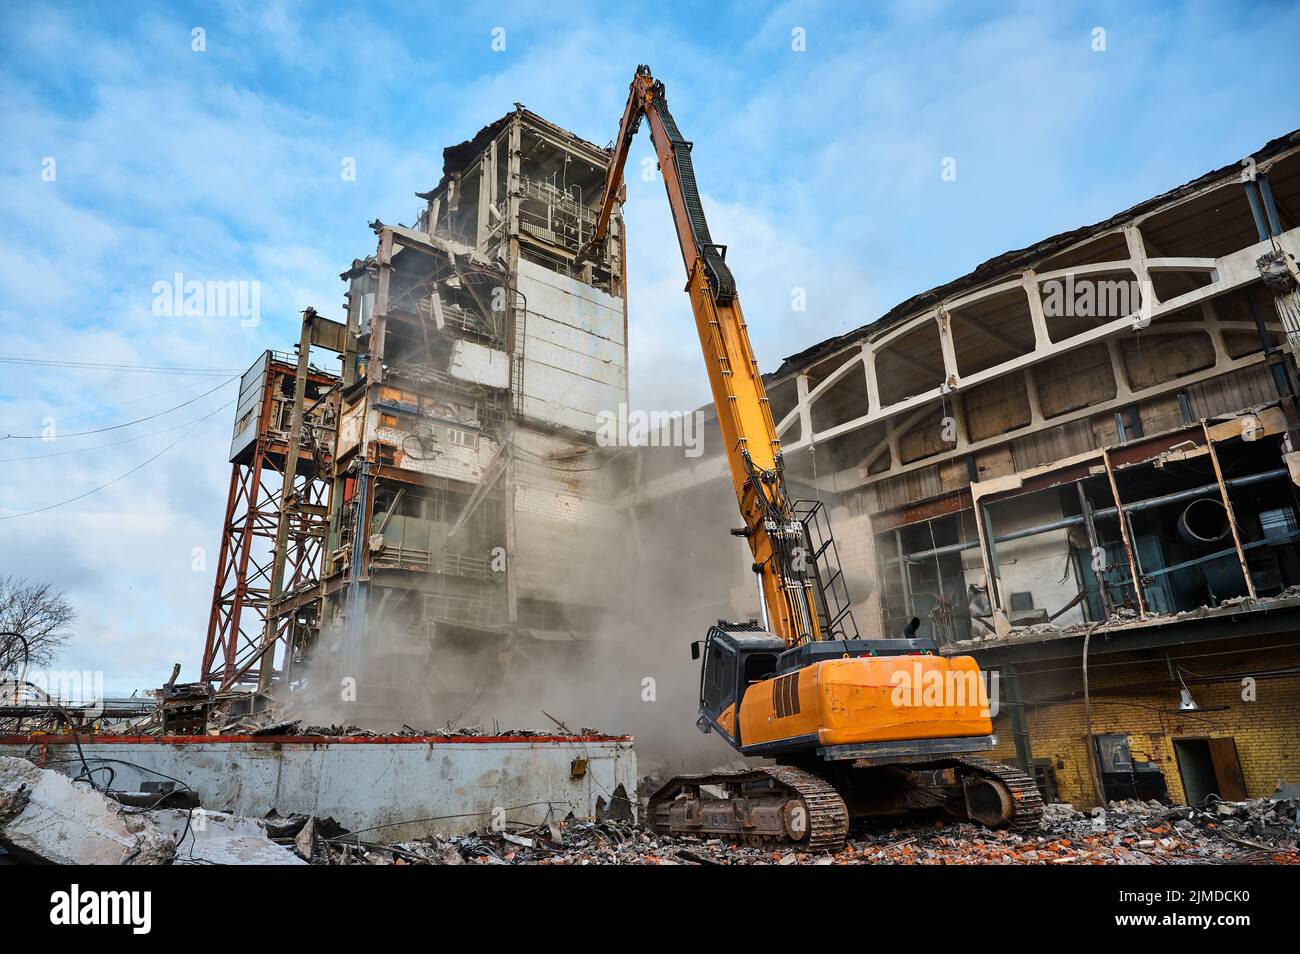 Demolición de un edificio industrial abandonado por excavadora Foto de stock